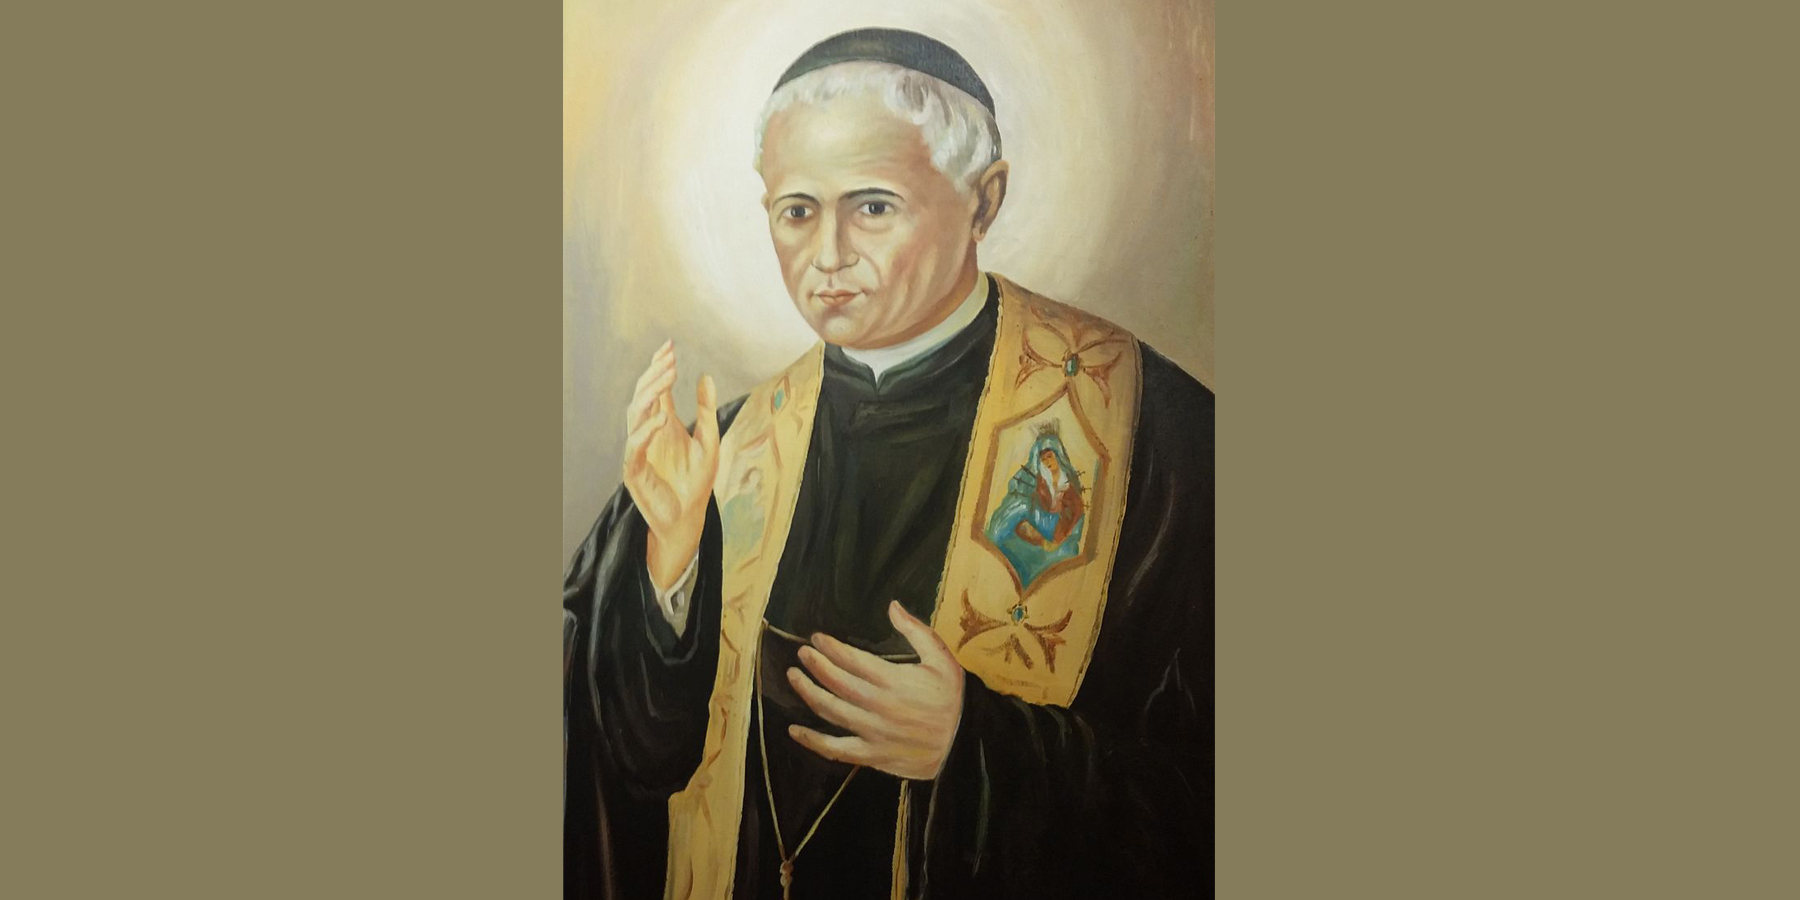 San Benito Biscop y San Antonio María Pucci: ¿Qué santo se celebra hoy?  Consulta el santoral del jueves 12 de enero | Cómo